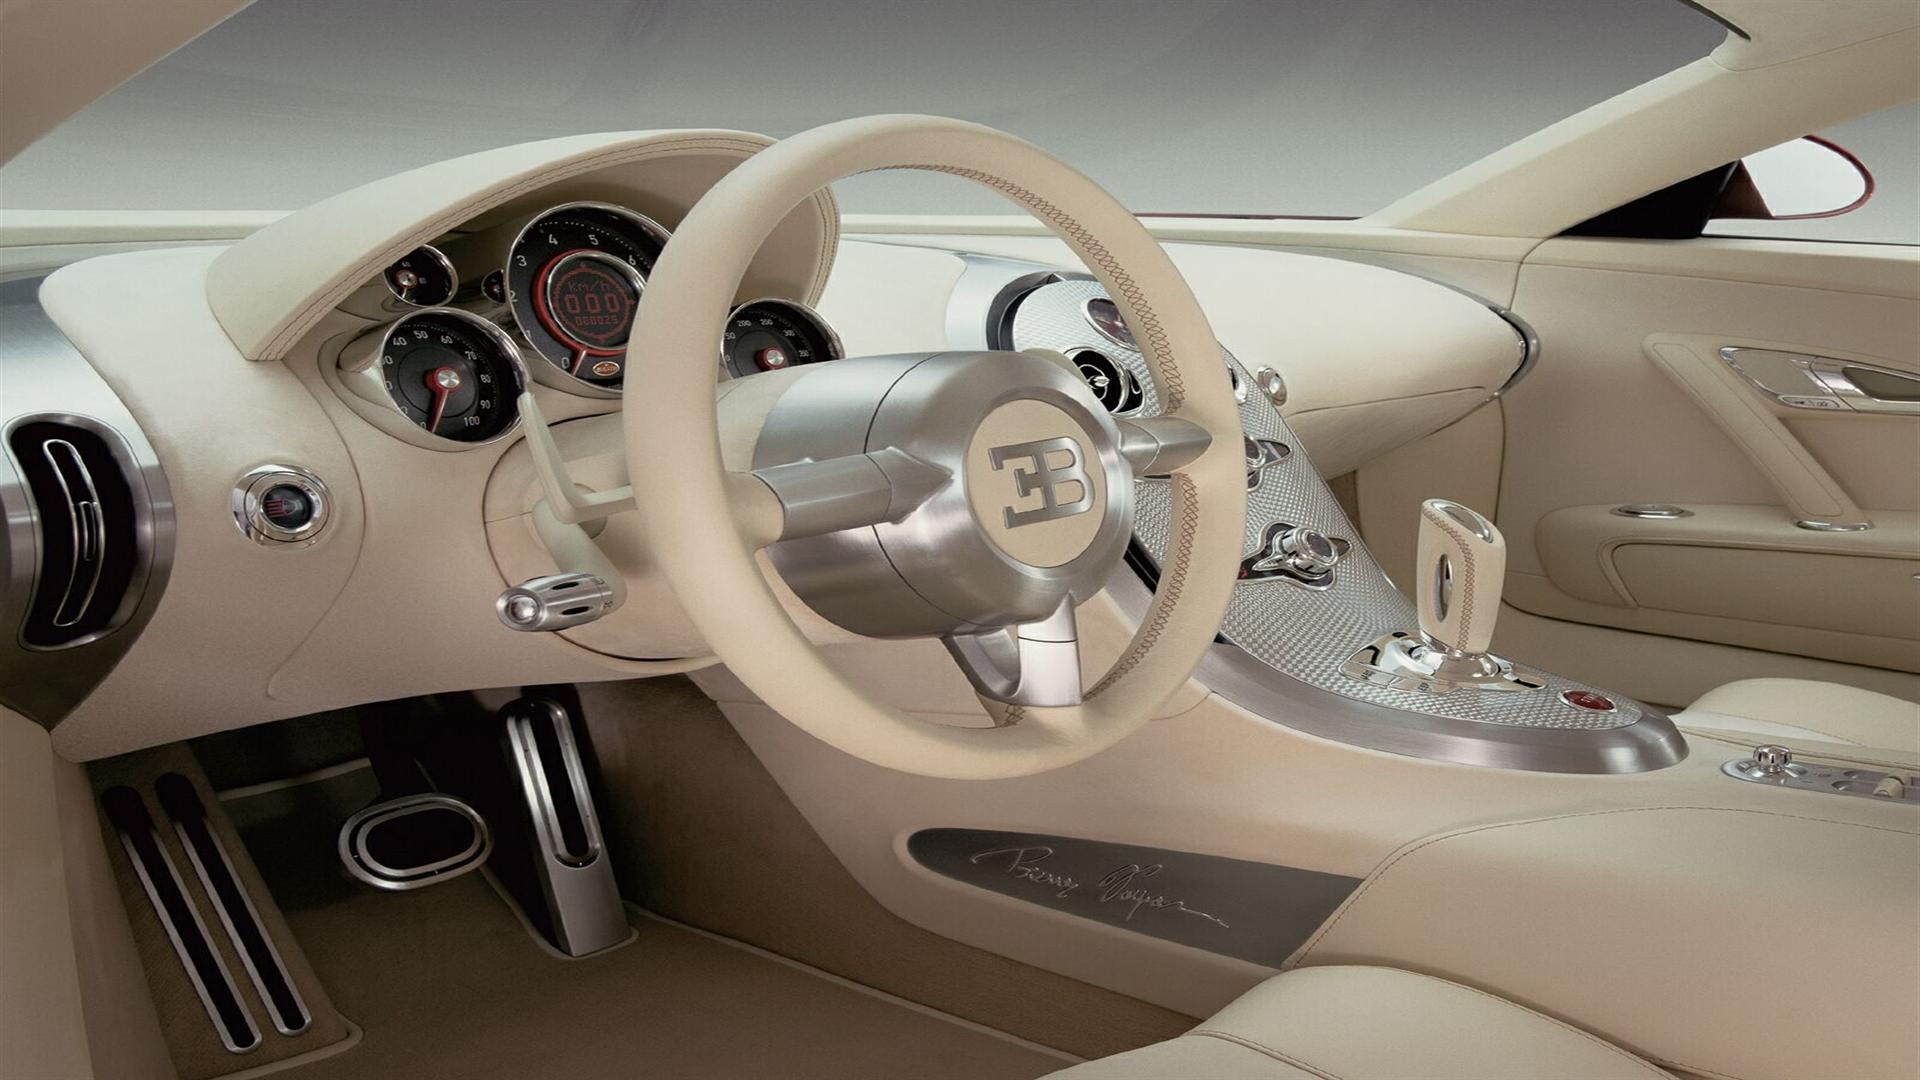 Bugatti Veyron Interior Wallpaper And Picture 1080p HD High